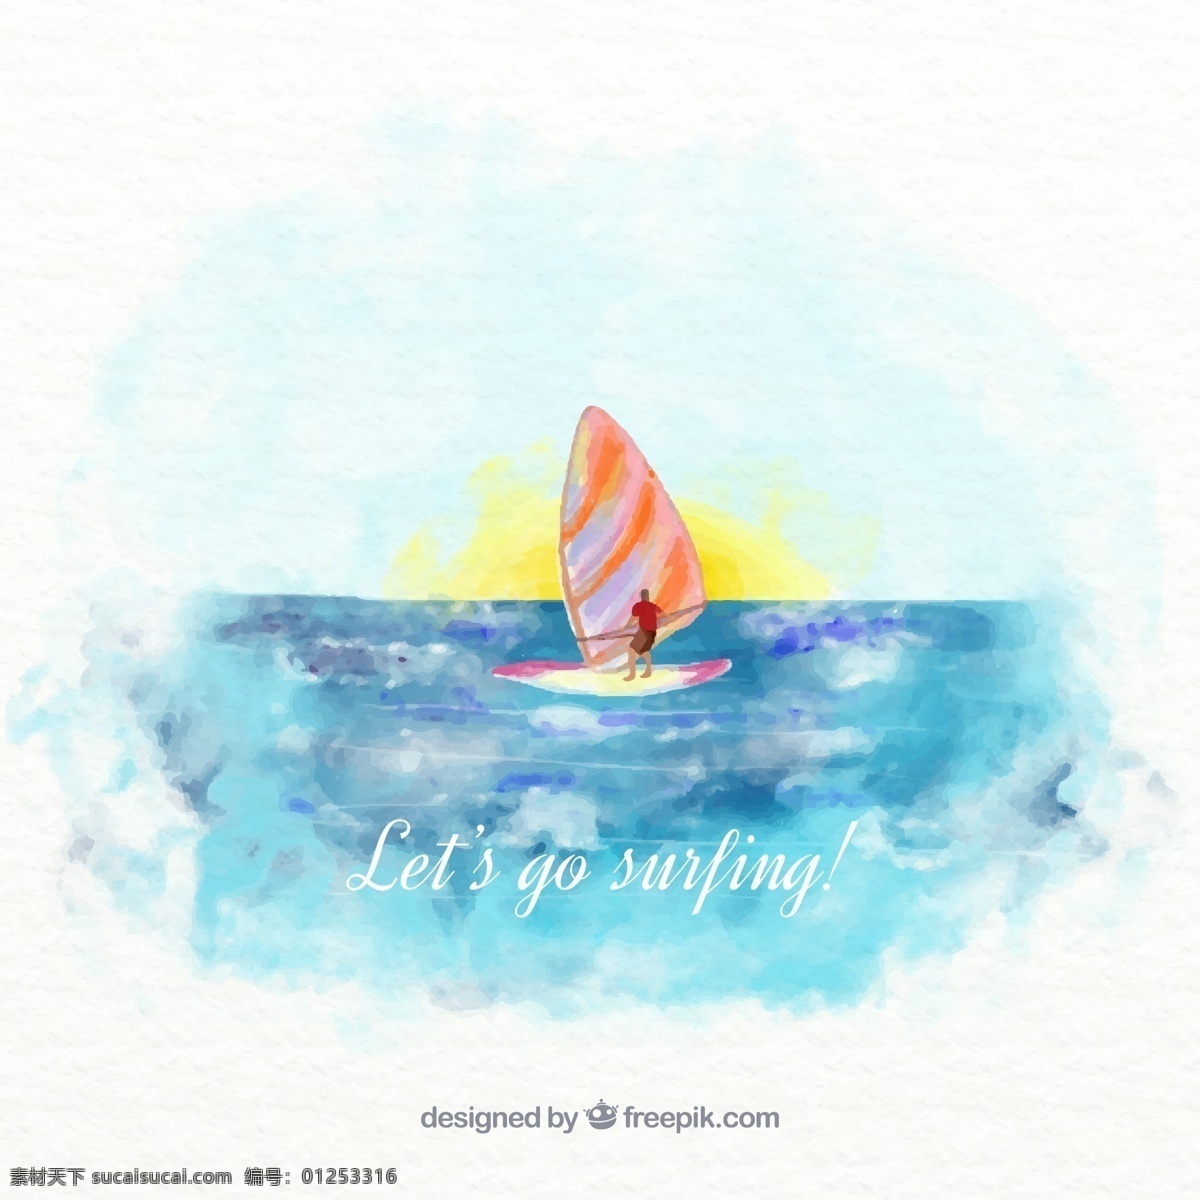 水彩 绘 大海 中 冲浪 帆板 矢量 风景 水彩绘 帆船 体育 运动 插画